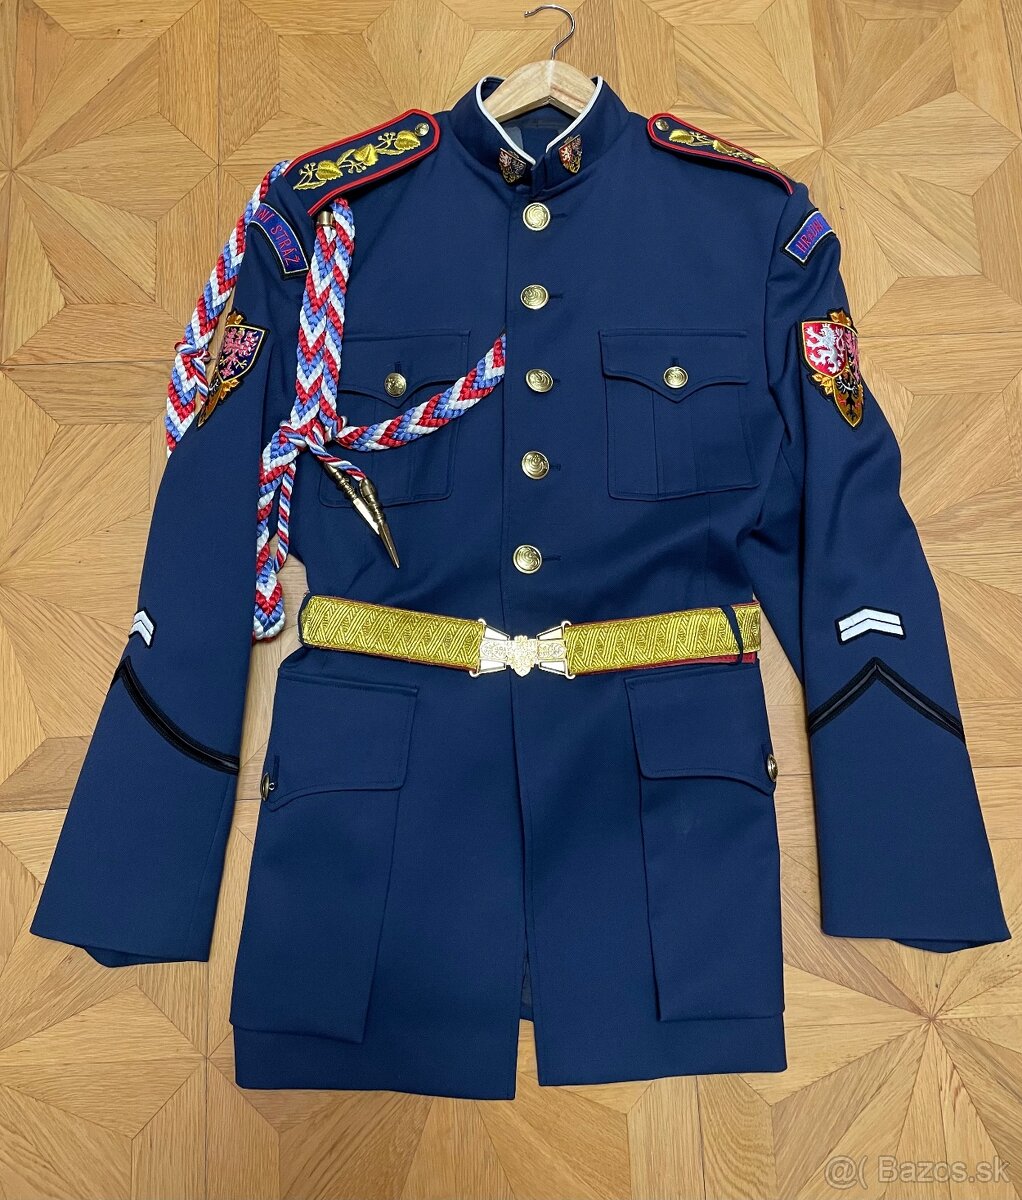 Uniformy čestná stráž ČR